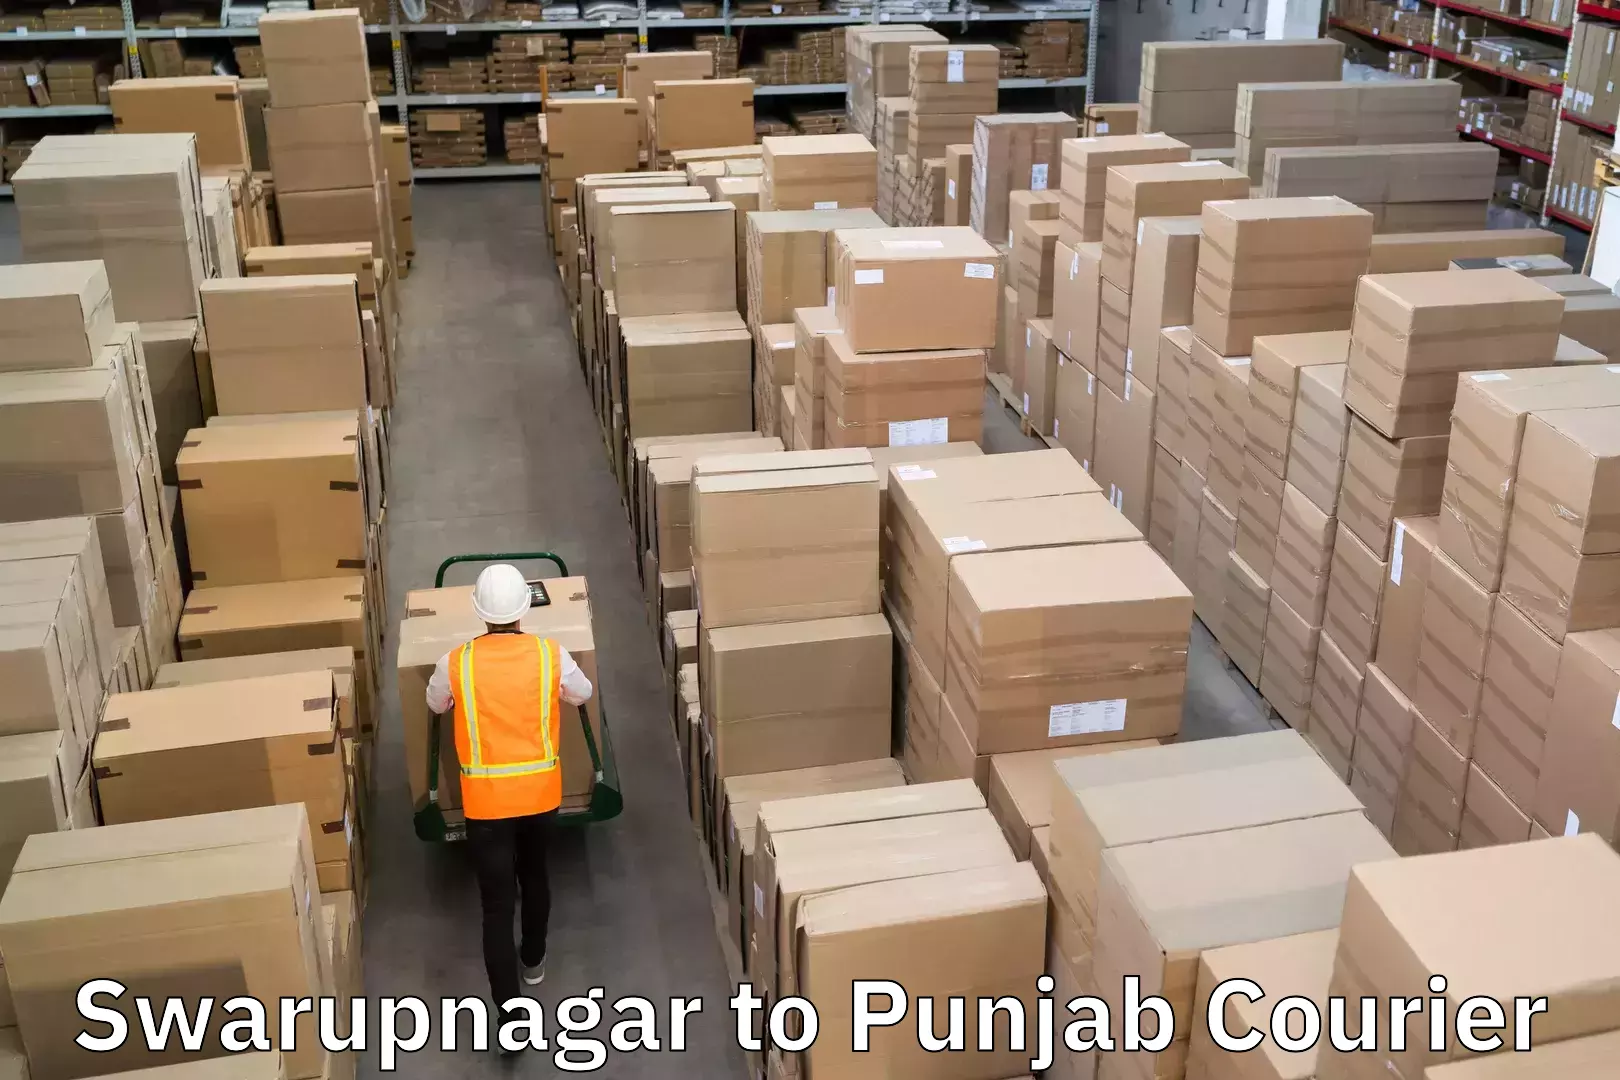 Express logistics service Swarupnagar to Punjab